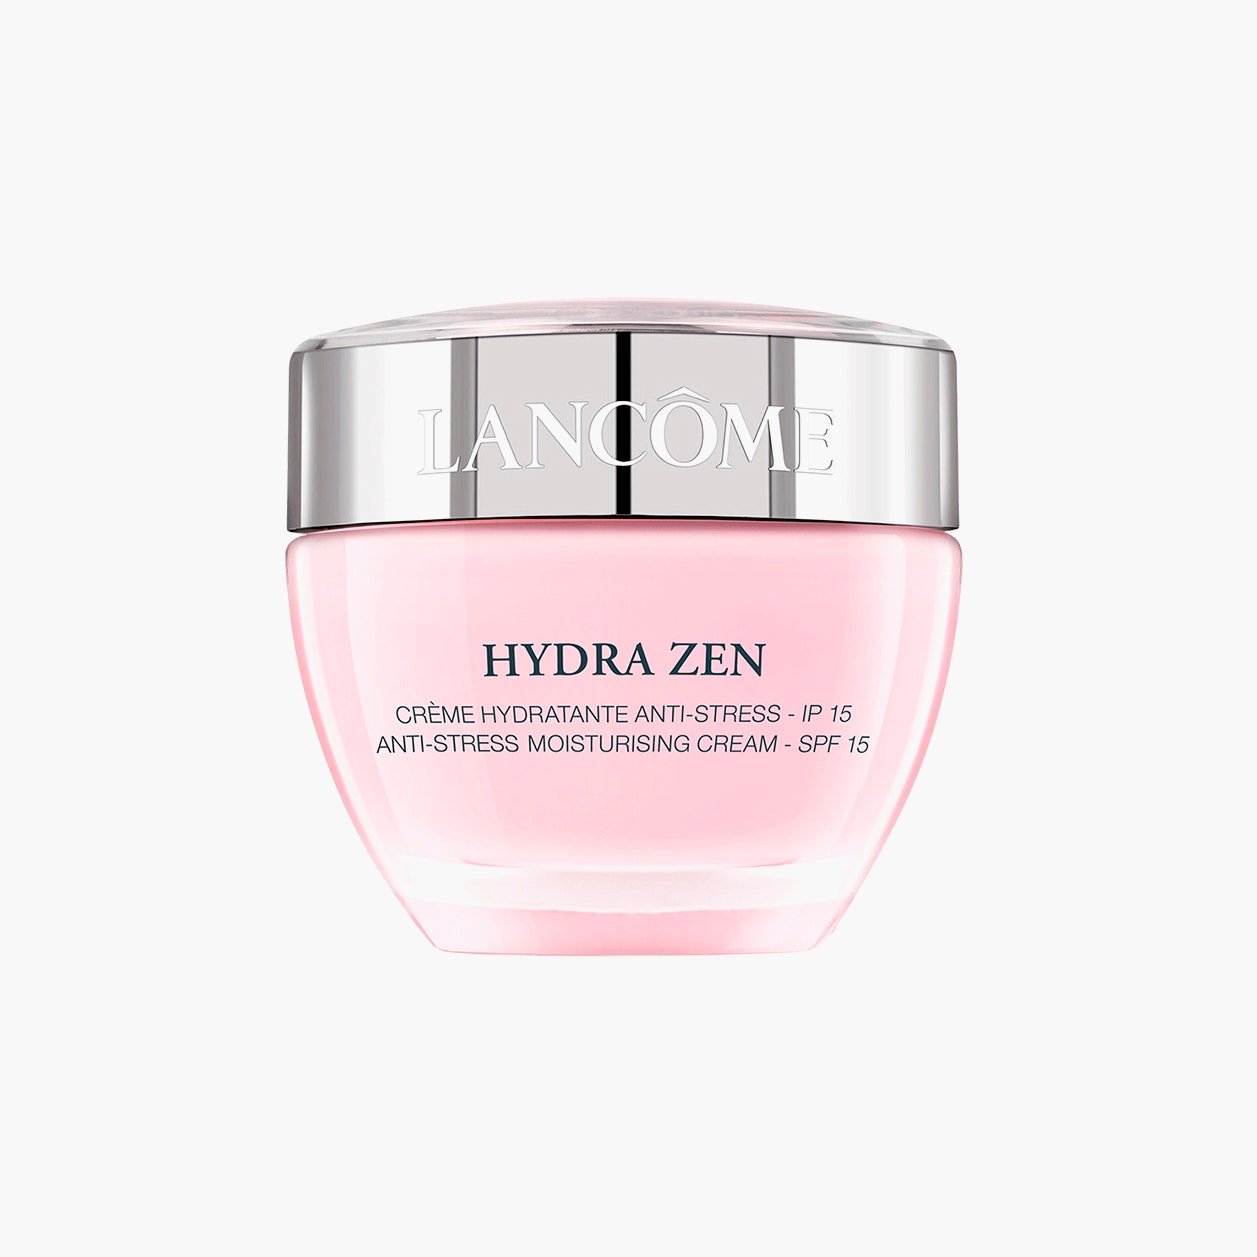 Мгновенно успокаивающий крем для всех типов кожи Hydra Zen SPF 15 Lancôme 5289 рублей